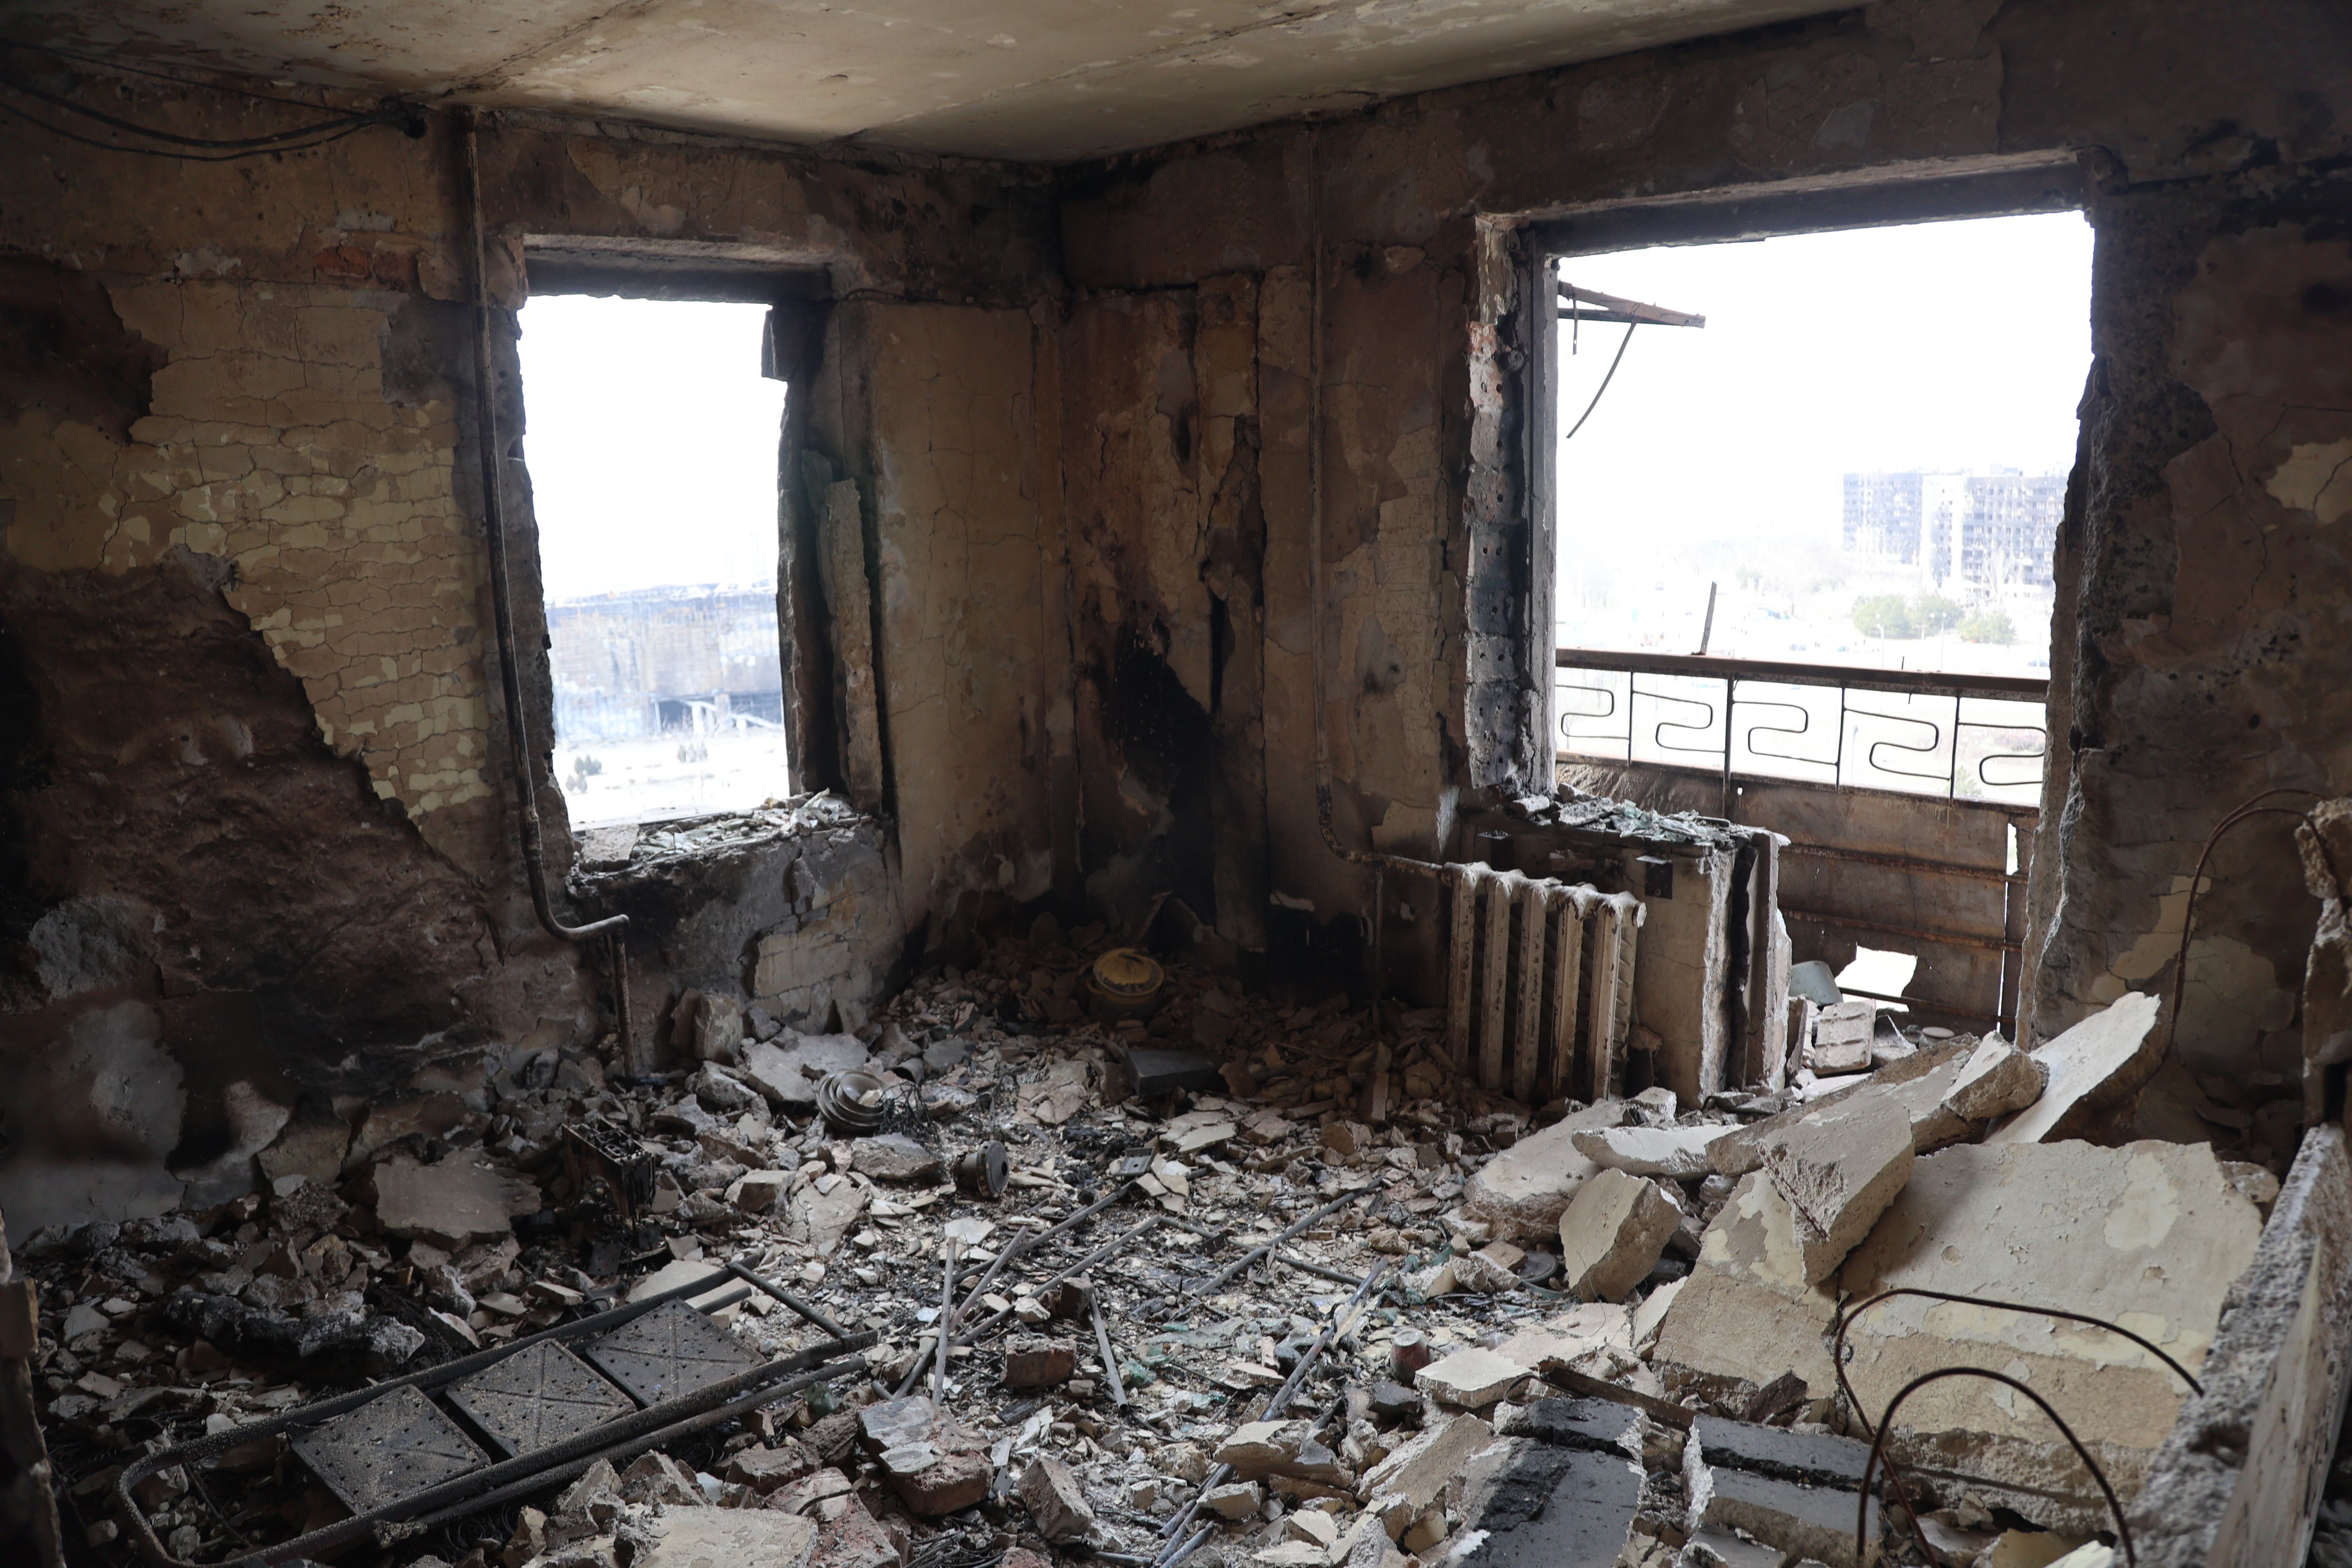 منظر للمباني والمركبات المتضررة بعد قصف مدينة ماريوبول الأوكرانية الخاضعة لسيطرة الجيش الروسي والانفصاليين الموالين لروسيا ، في 29 مارس.